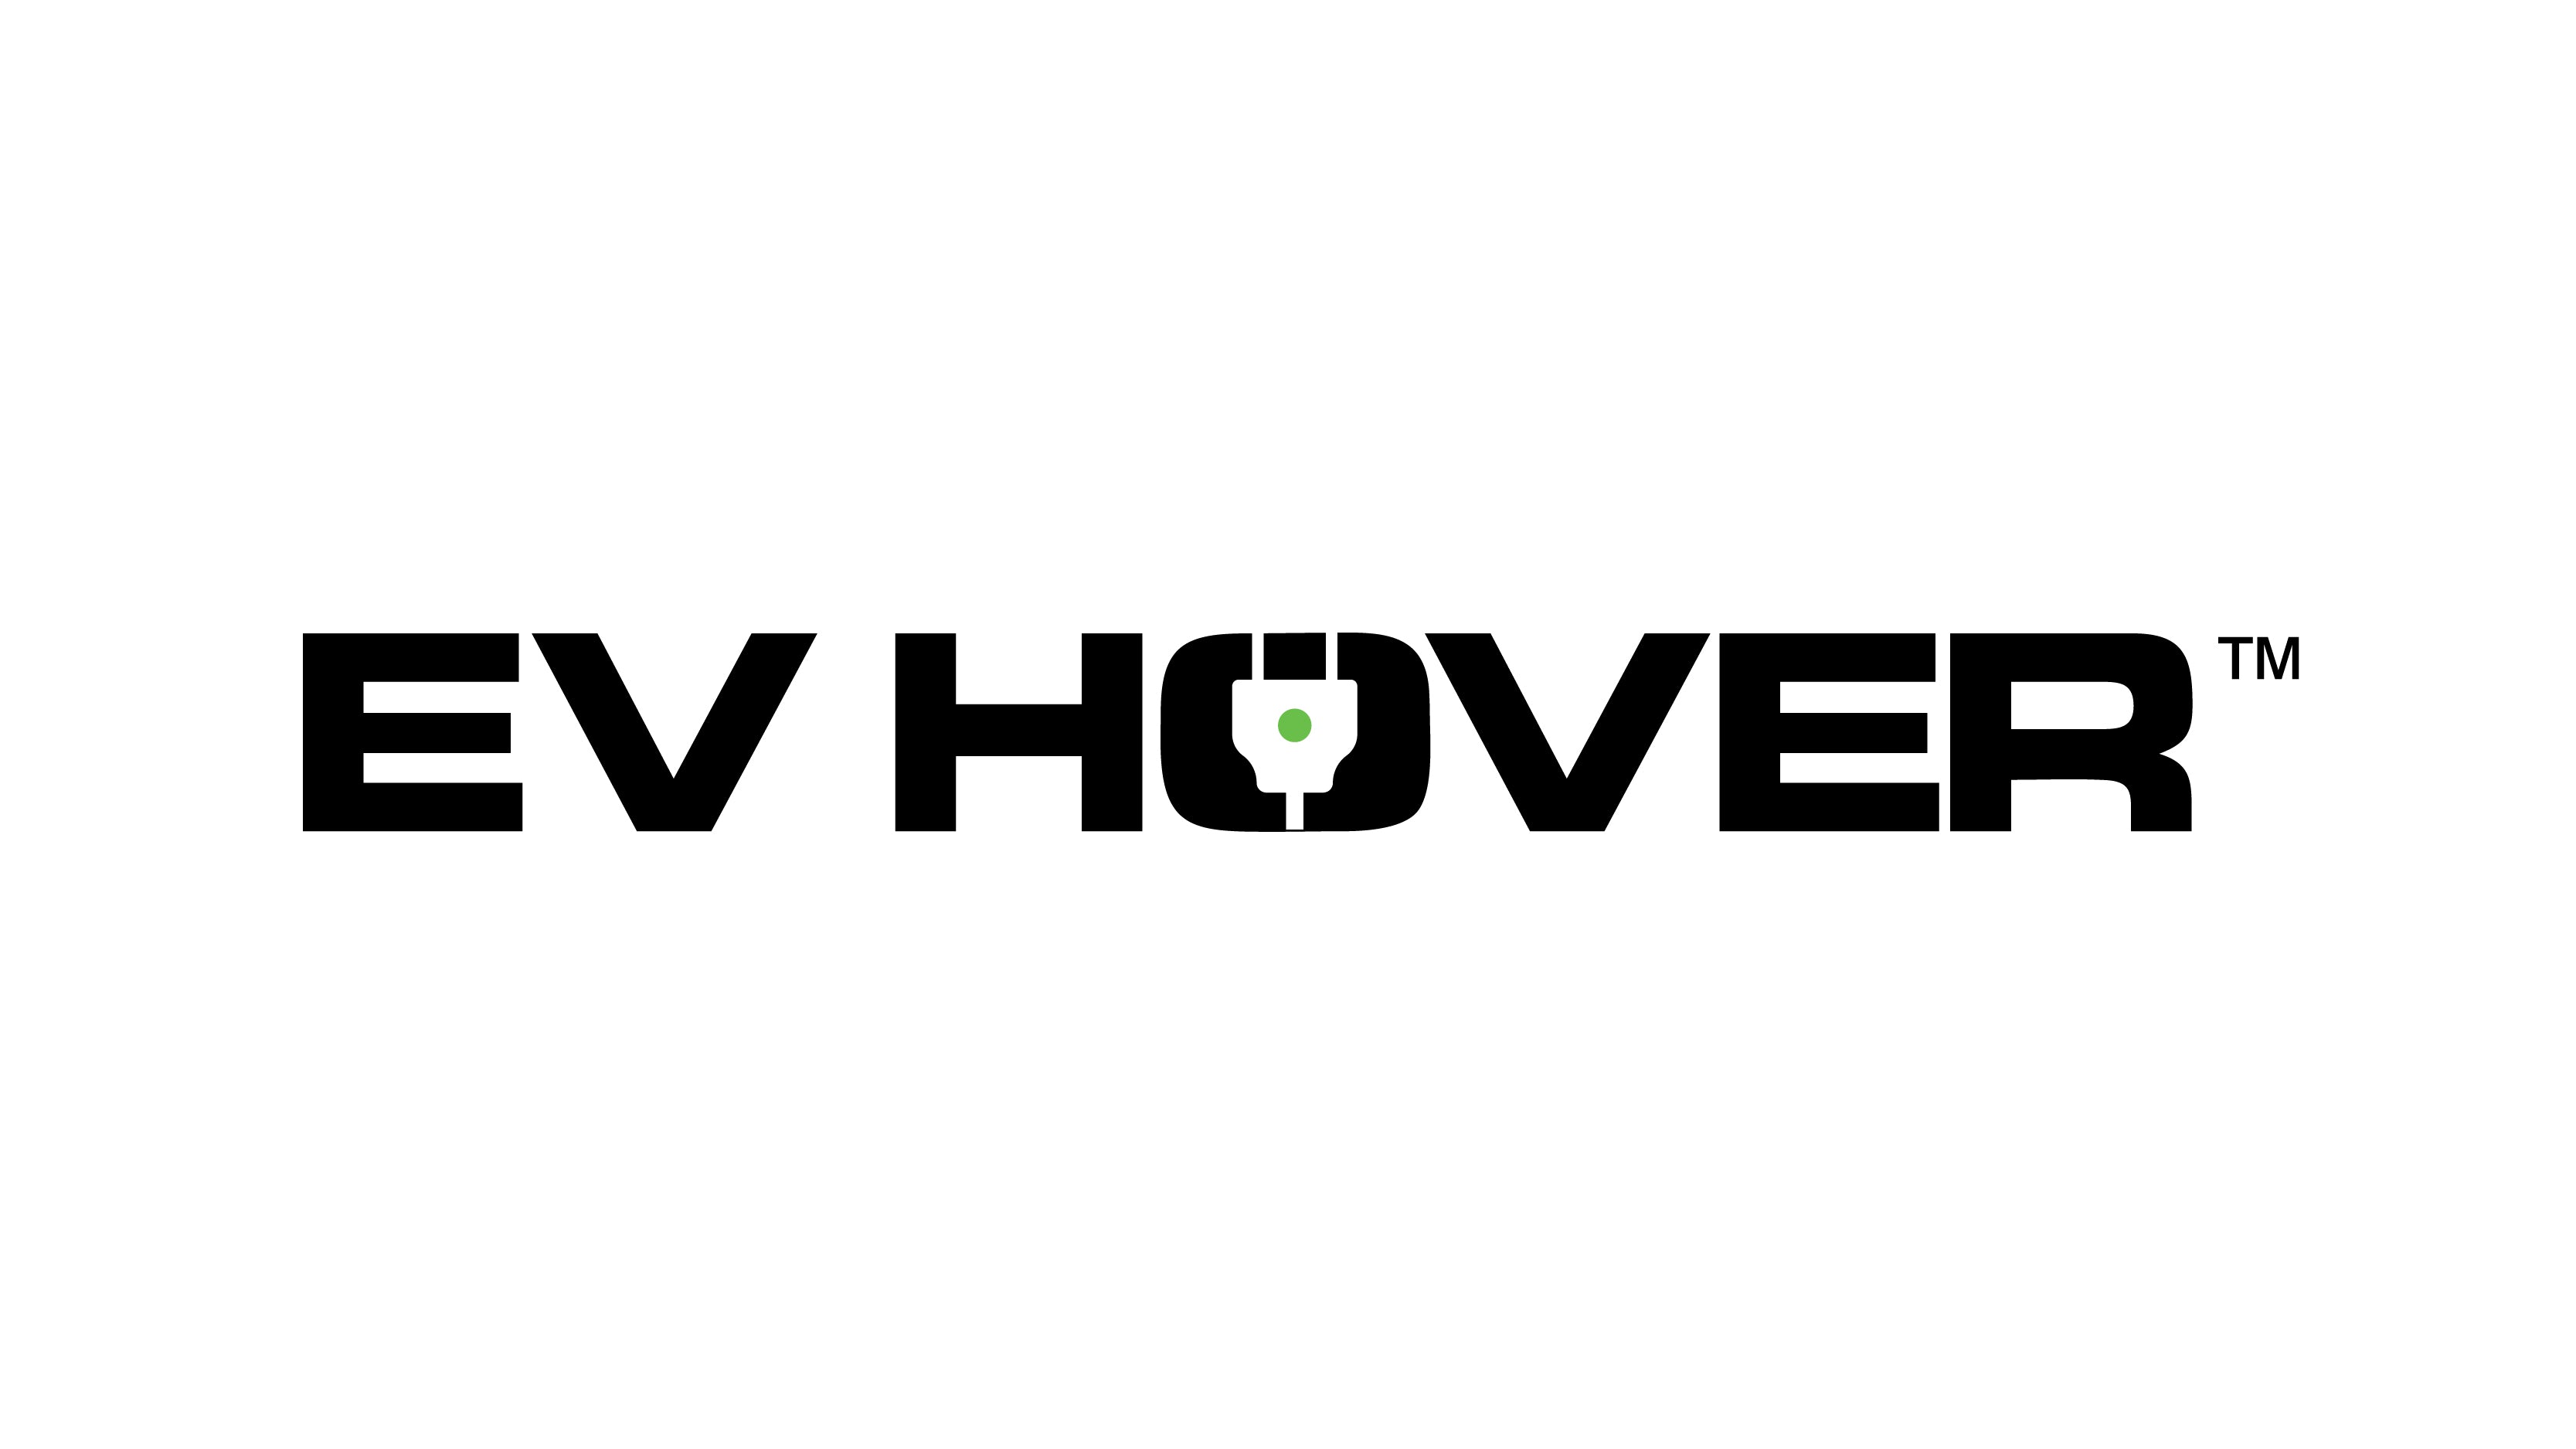 evhover.com